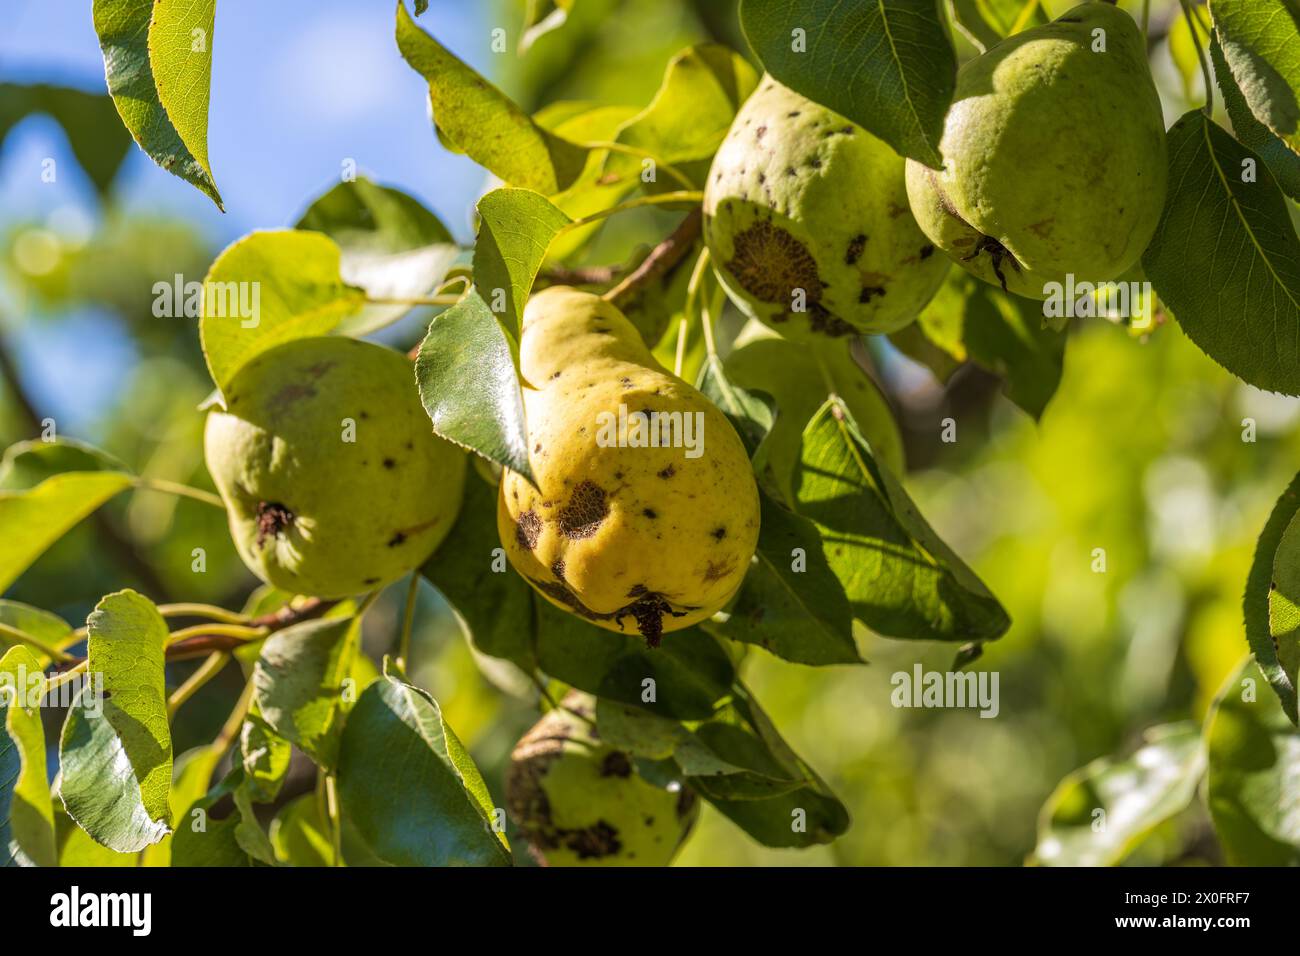 Fruits de poire affectés par la gale du pommier Venturia inaequalis. Problèmes avec le jardin Banque D'Images